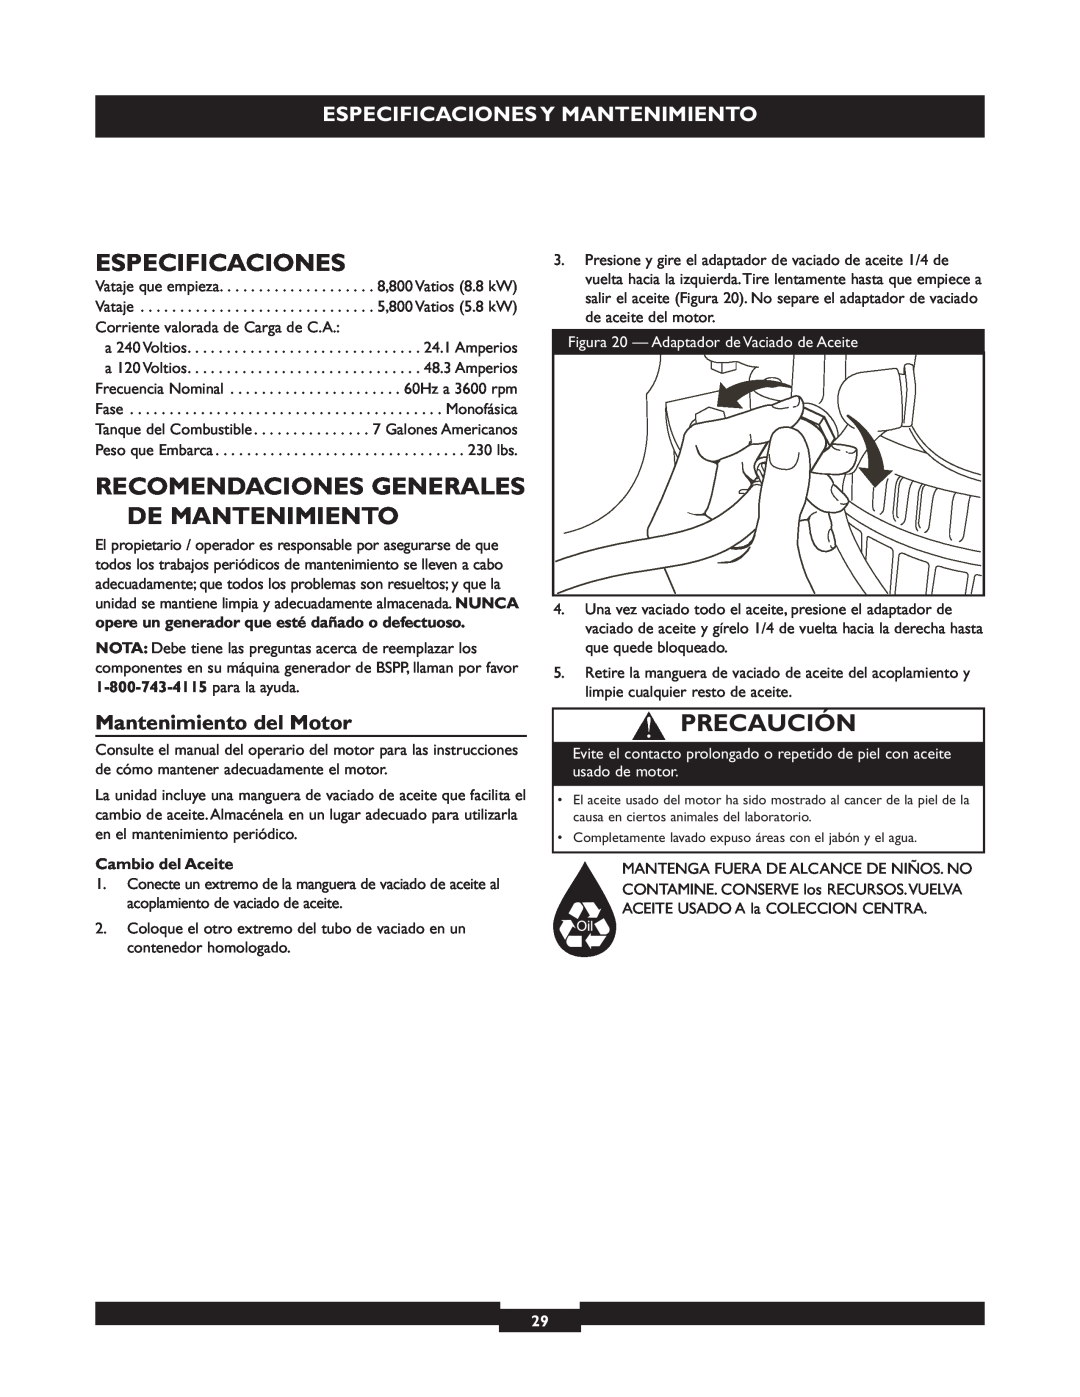 Briggs & Stratton 30205 manual Recomendaciones Generales De Mantenimiento, Especificaciones Y Mantenimiento, Precaución 